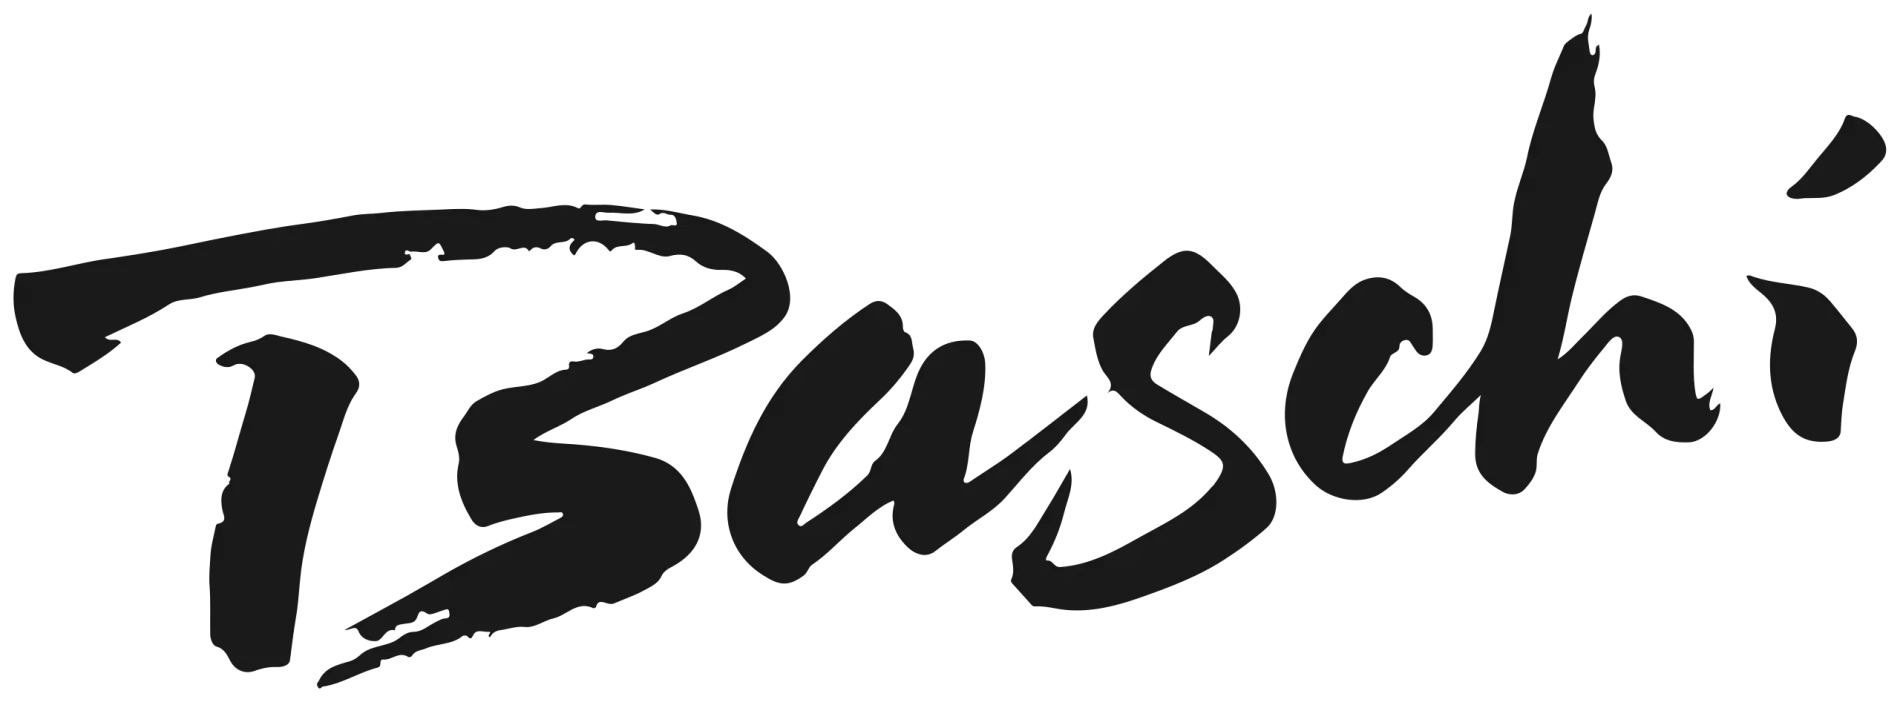 2560px-baschi-logo.svg.